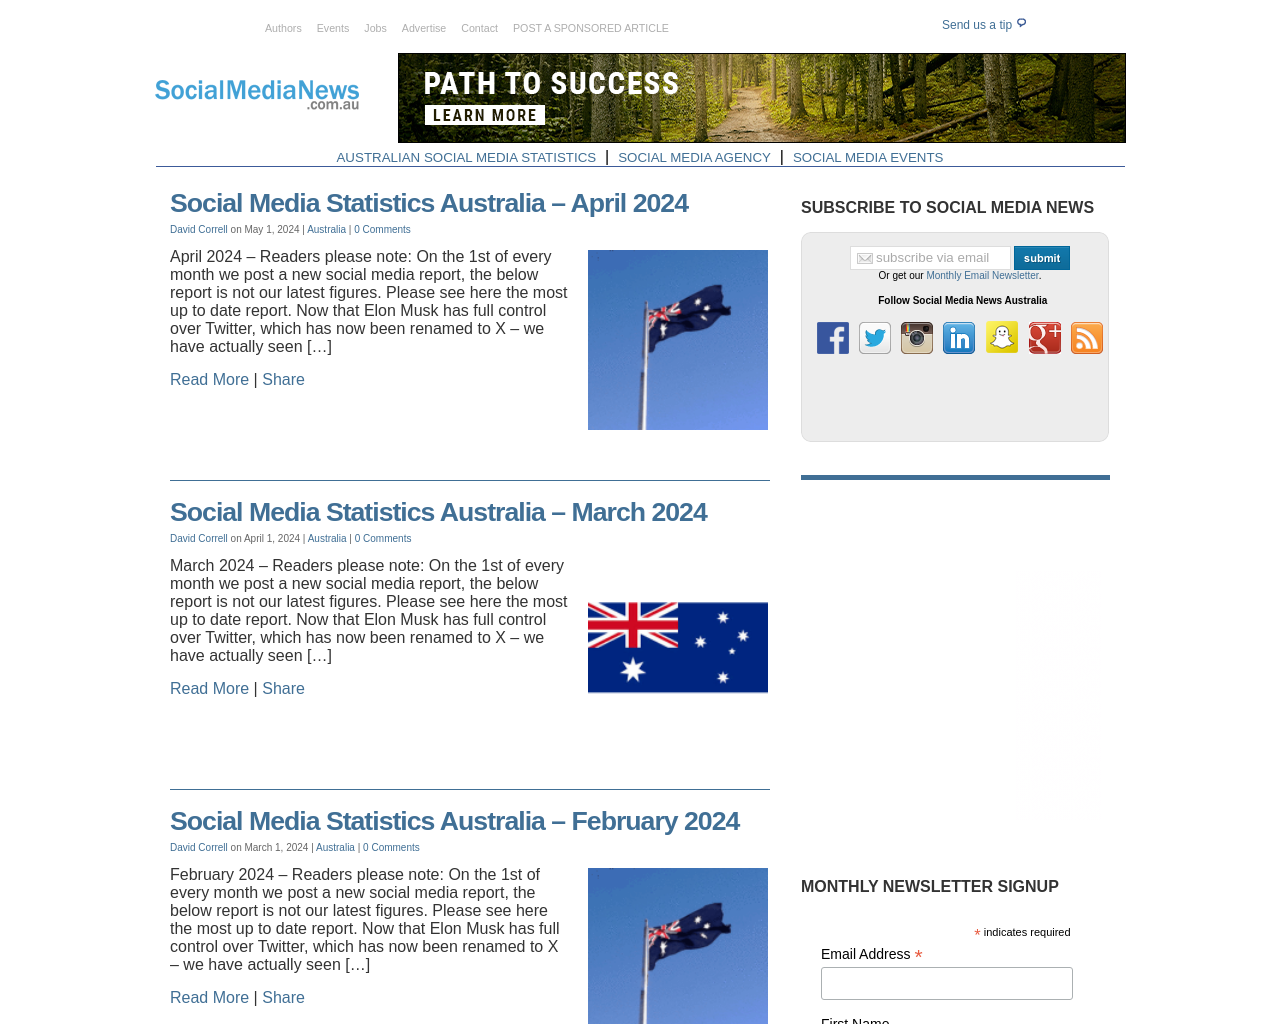 socialmedianews.com.au